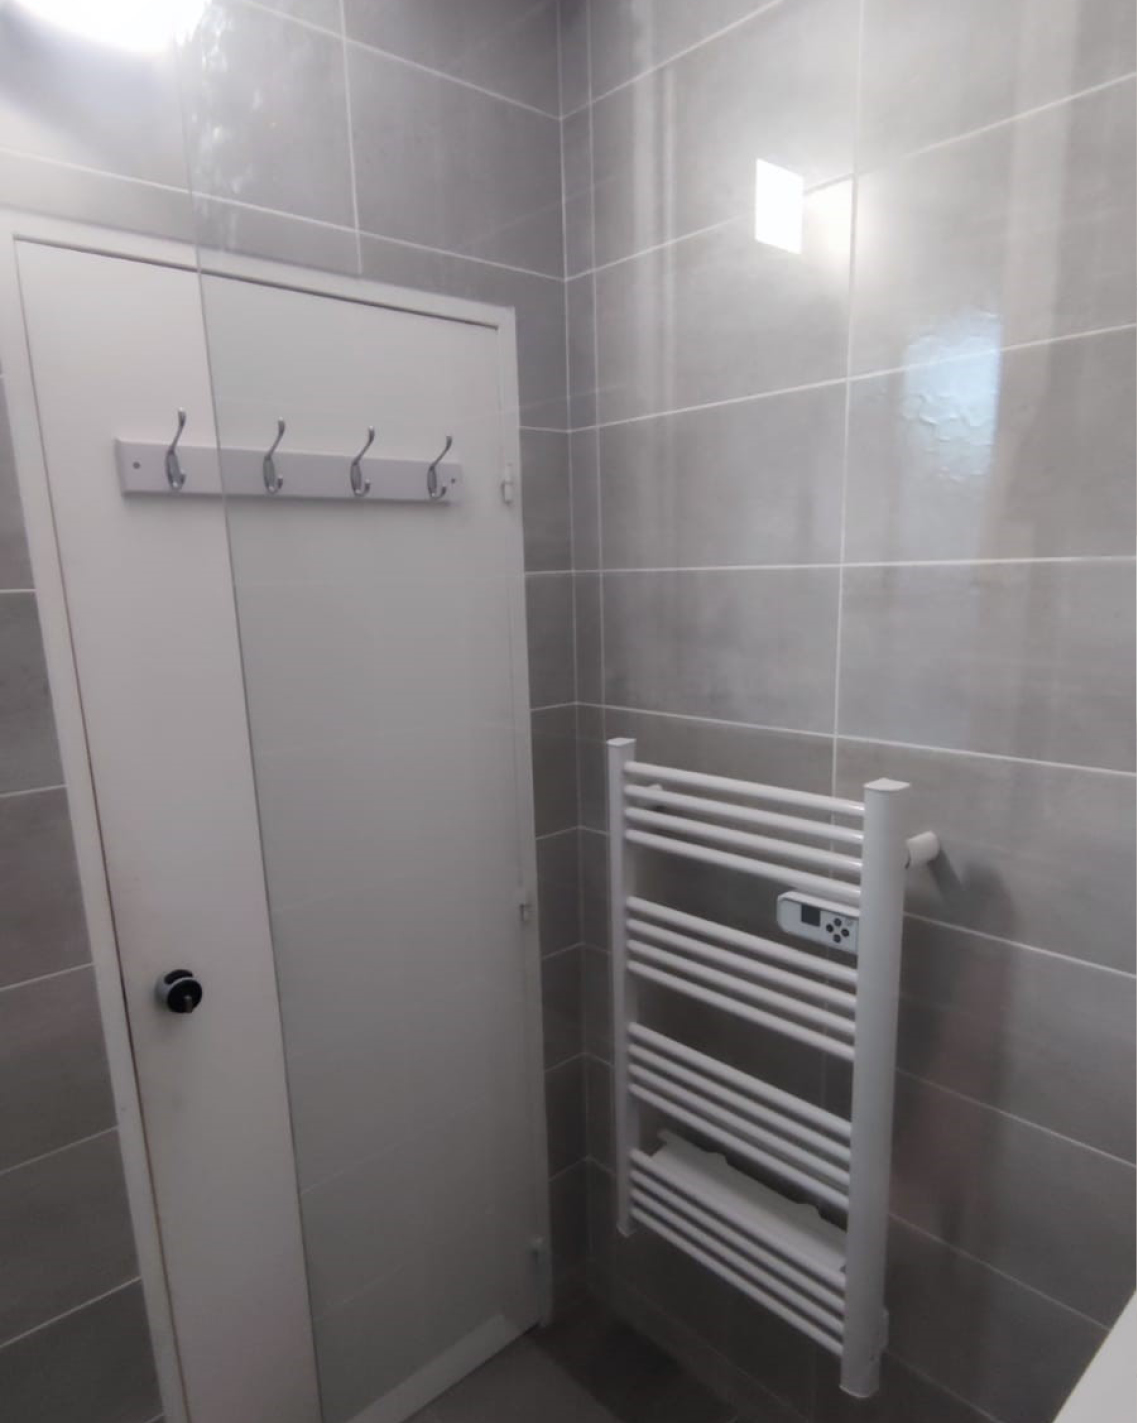 projet rénovation petite salle bain contemporaine travaux après bailloeuil Perpignan